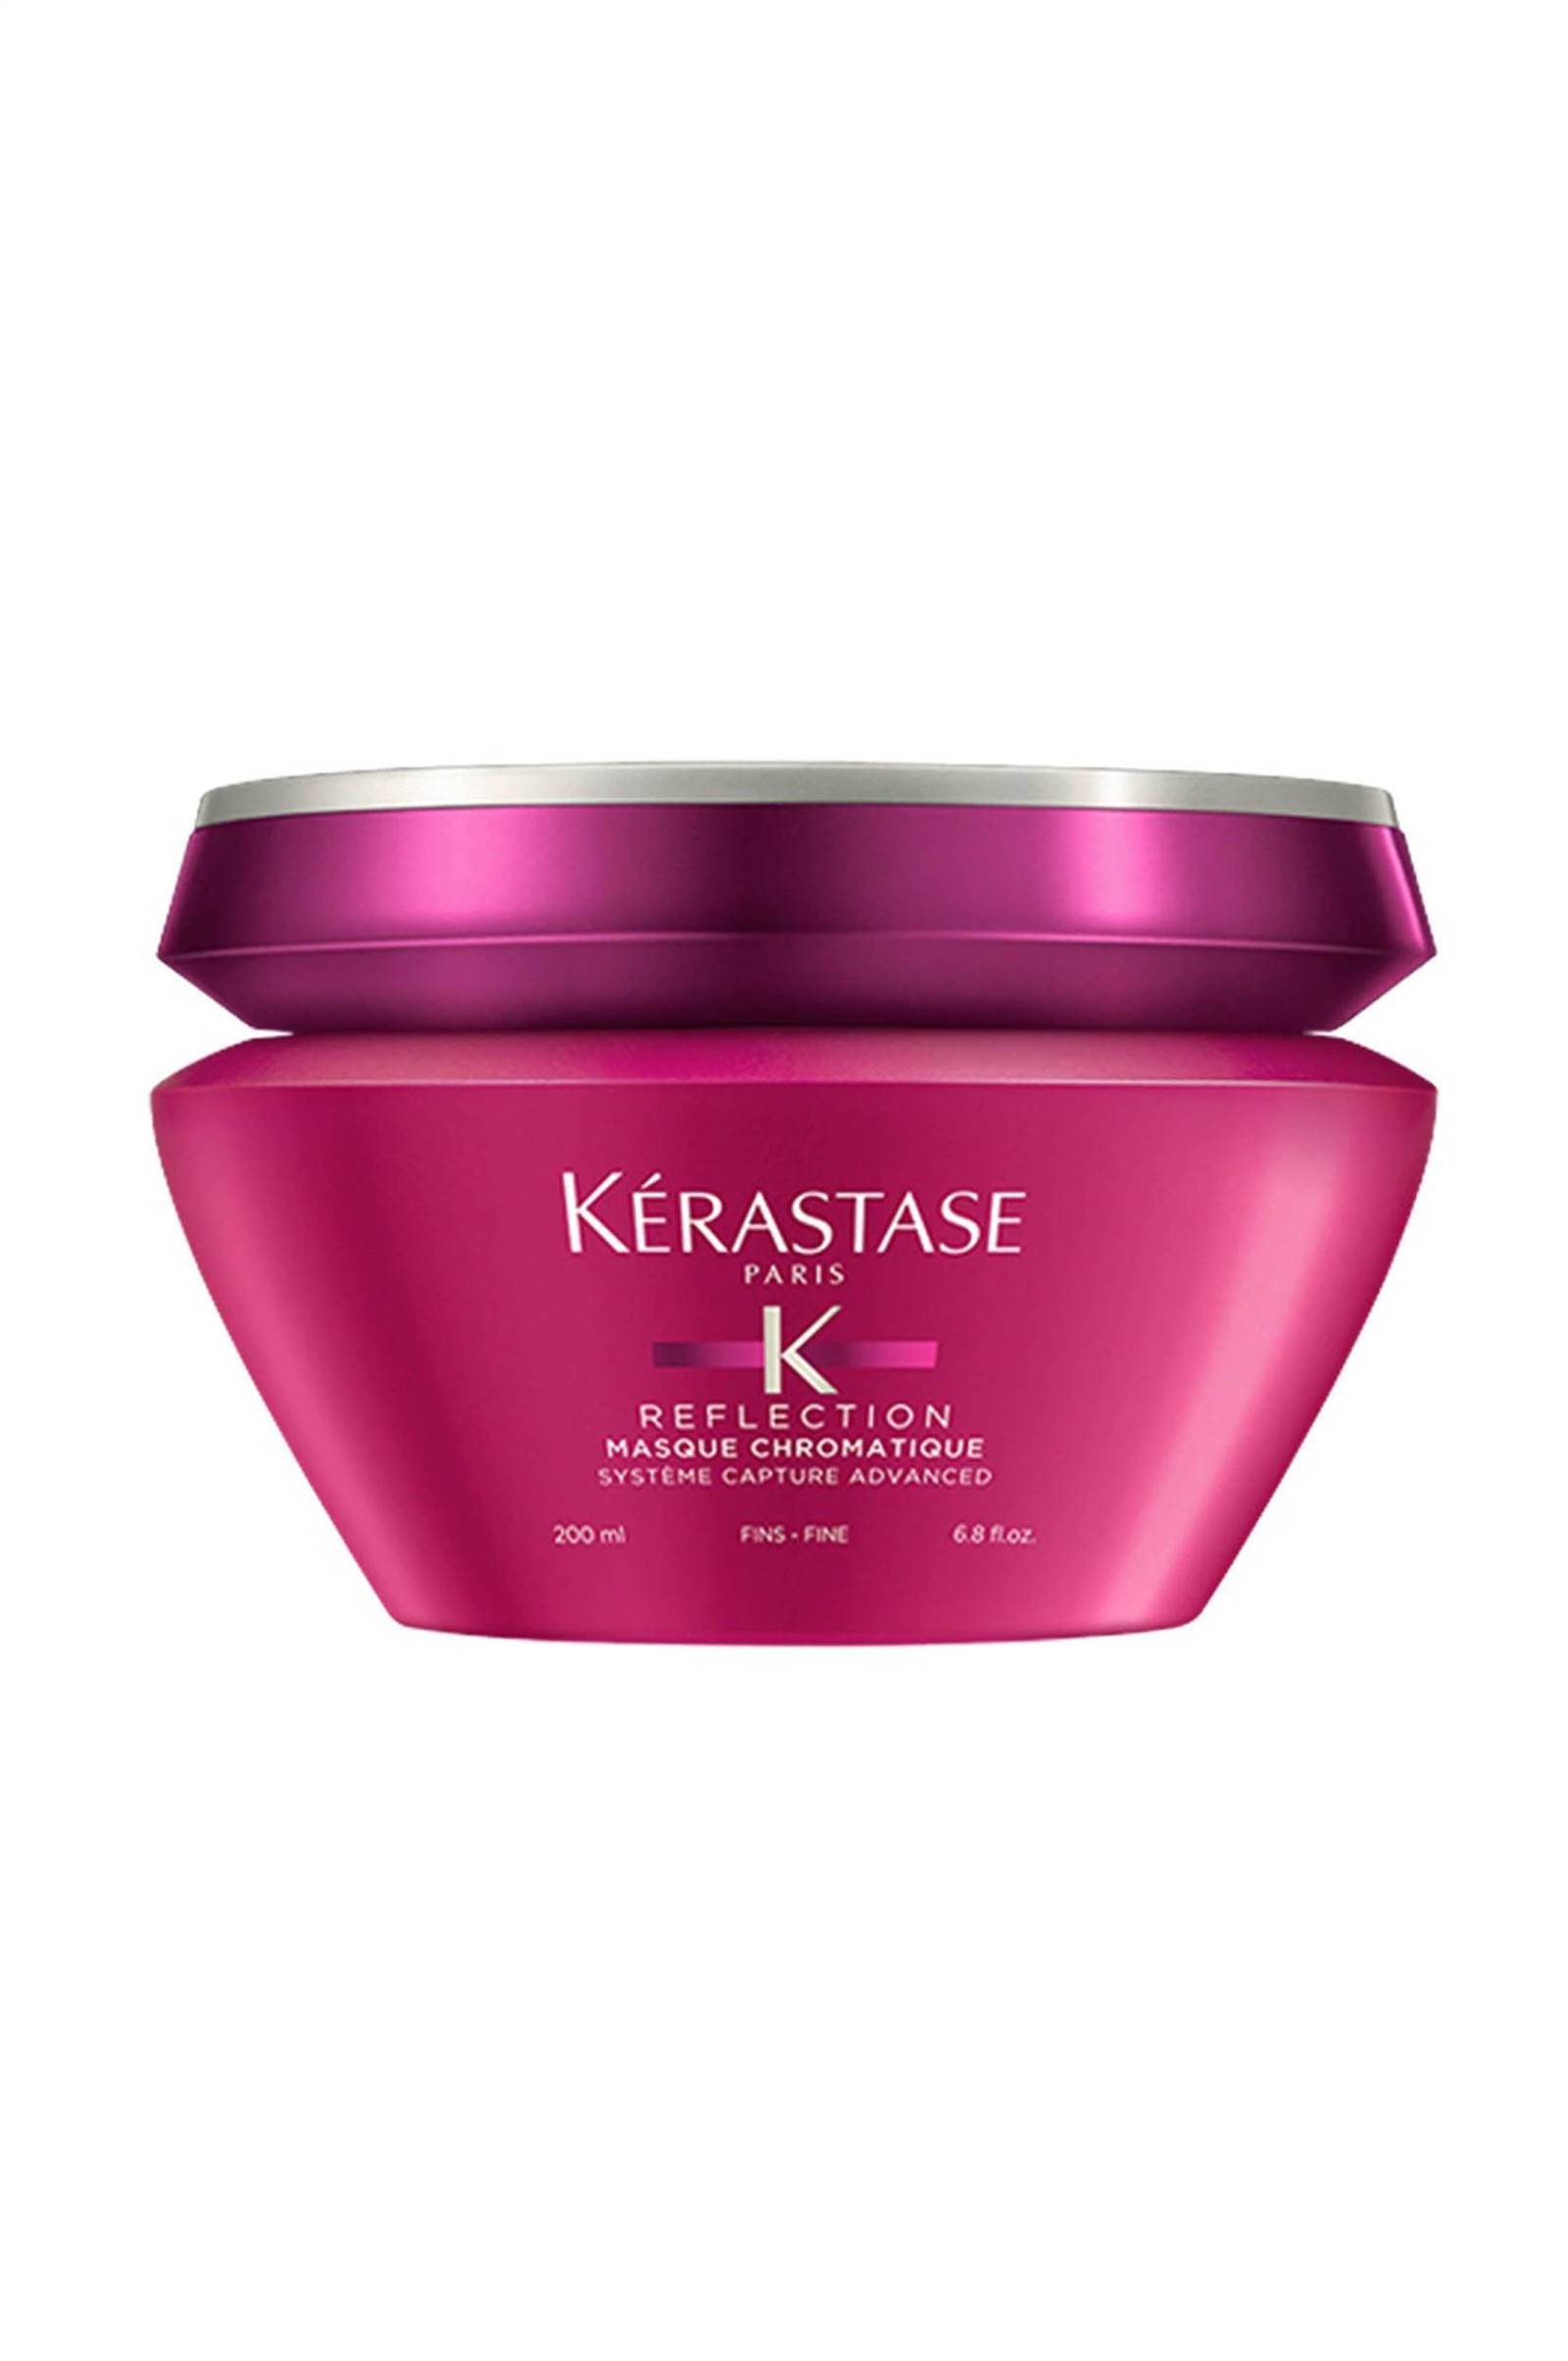 Mejores mascarillas para pelo: Reflection Masque Chromatique de Kérastase para pelo fino y coloreado 